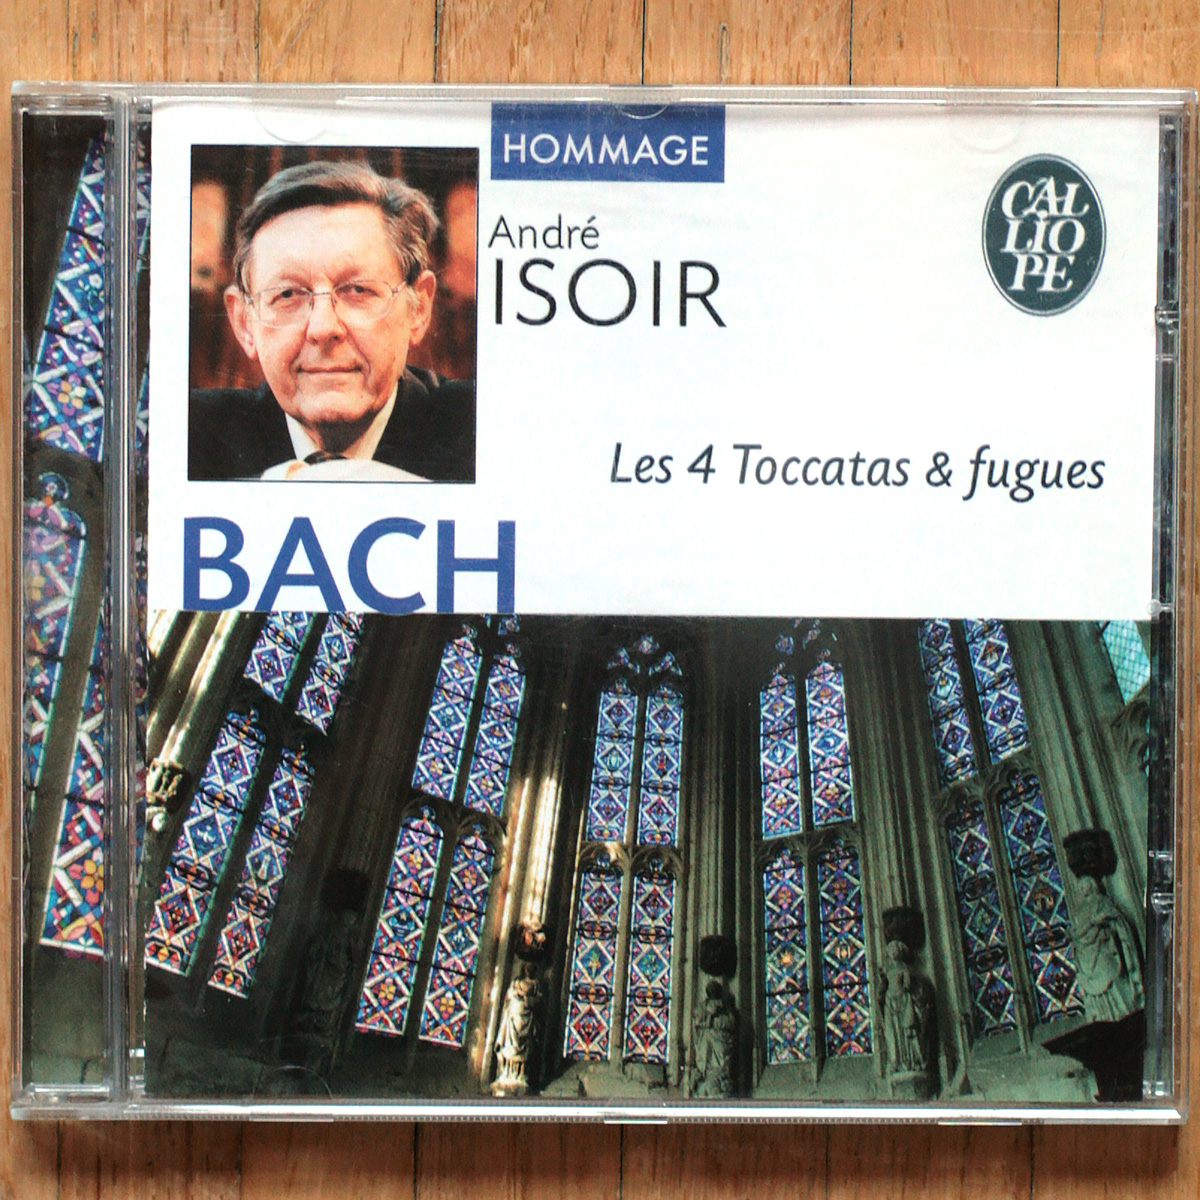 Bach • L'œuvre pour orgue • Vol. 6 • Toccatas et fugues • Calliope CAL 5708 • André Isoir